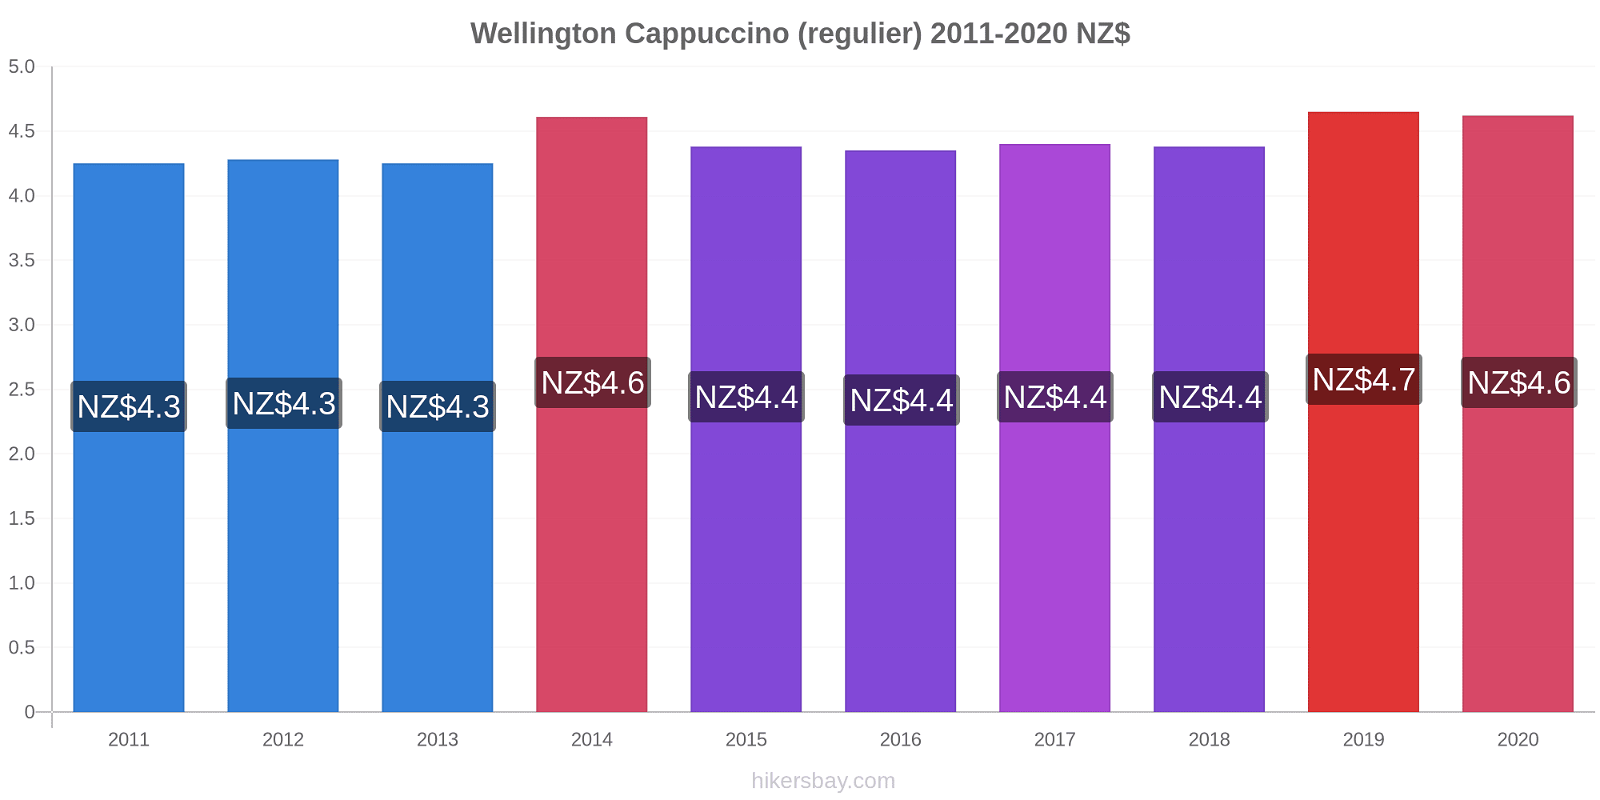 Wellington prijswijzigingen Cappuccino (regelmatige) hikersbay.com